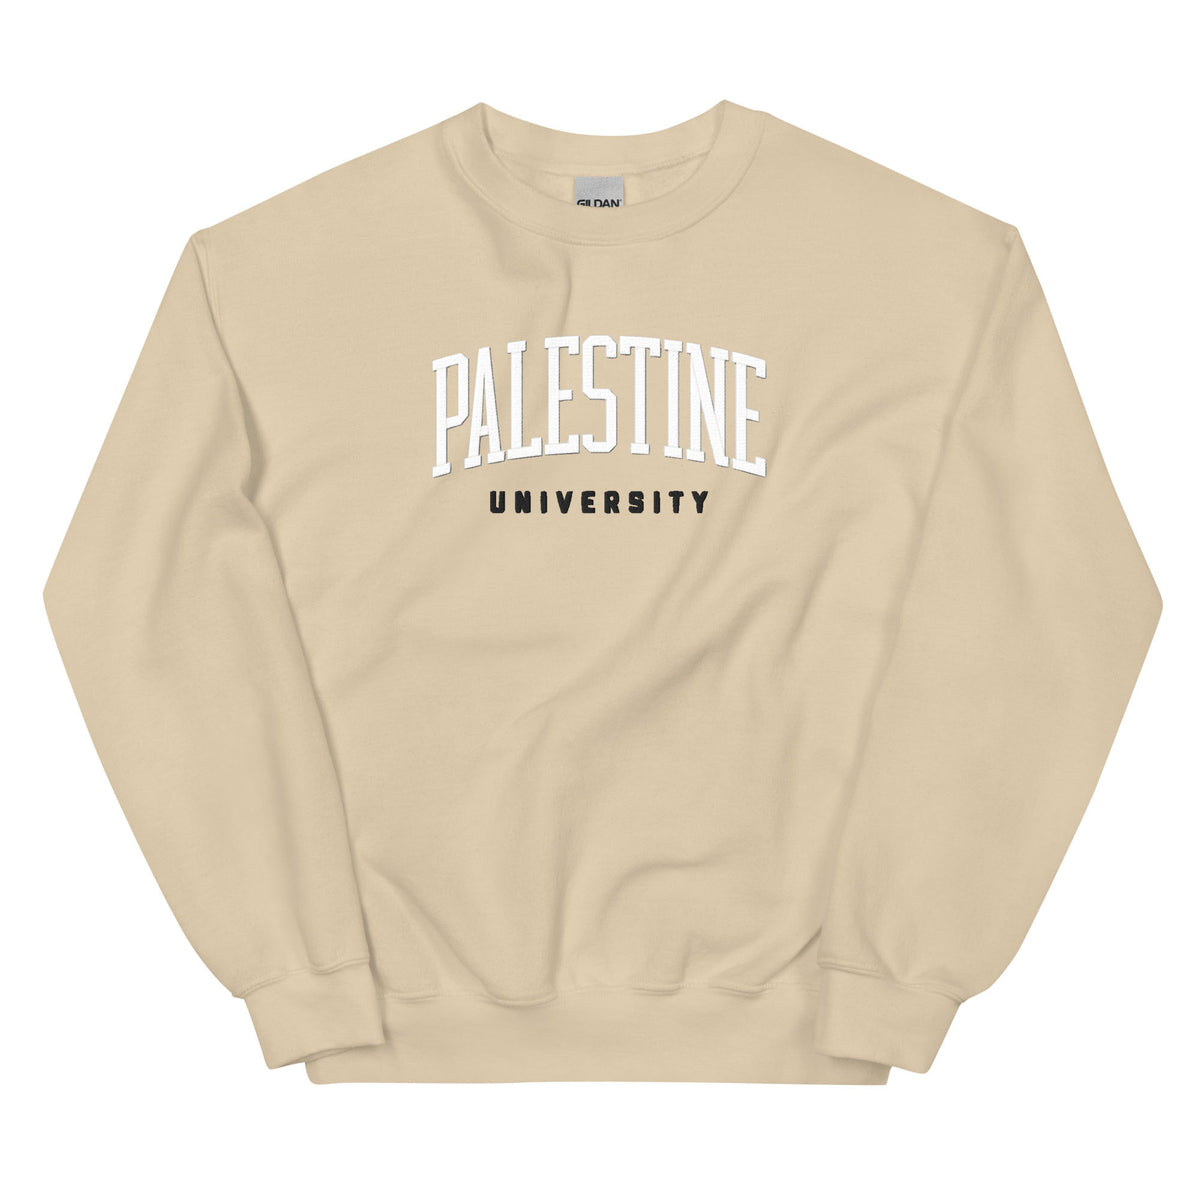 Haifa, Palestine - Sweatshirt